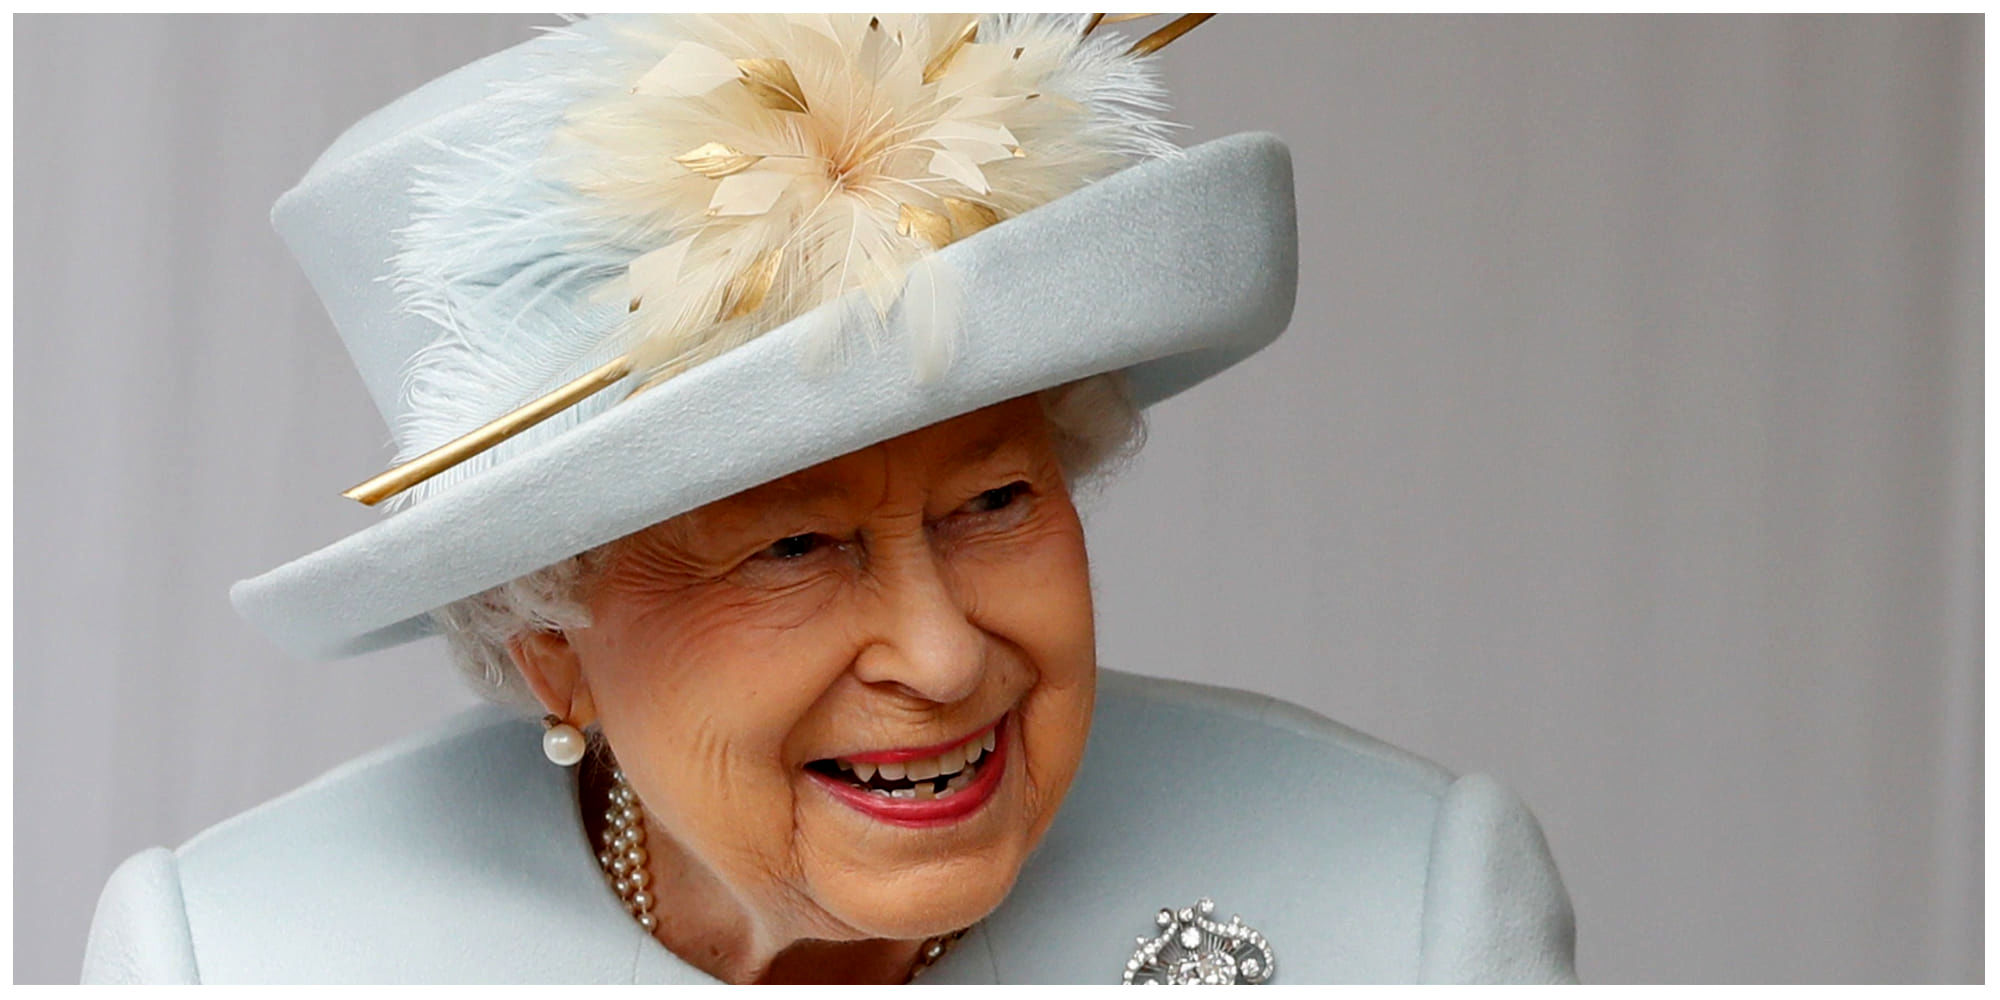  ادای احترام اسب ملکه الیزابت دوم به تابوت وی!+عکس